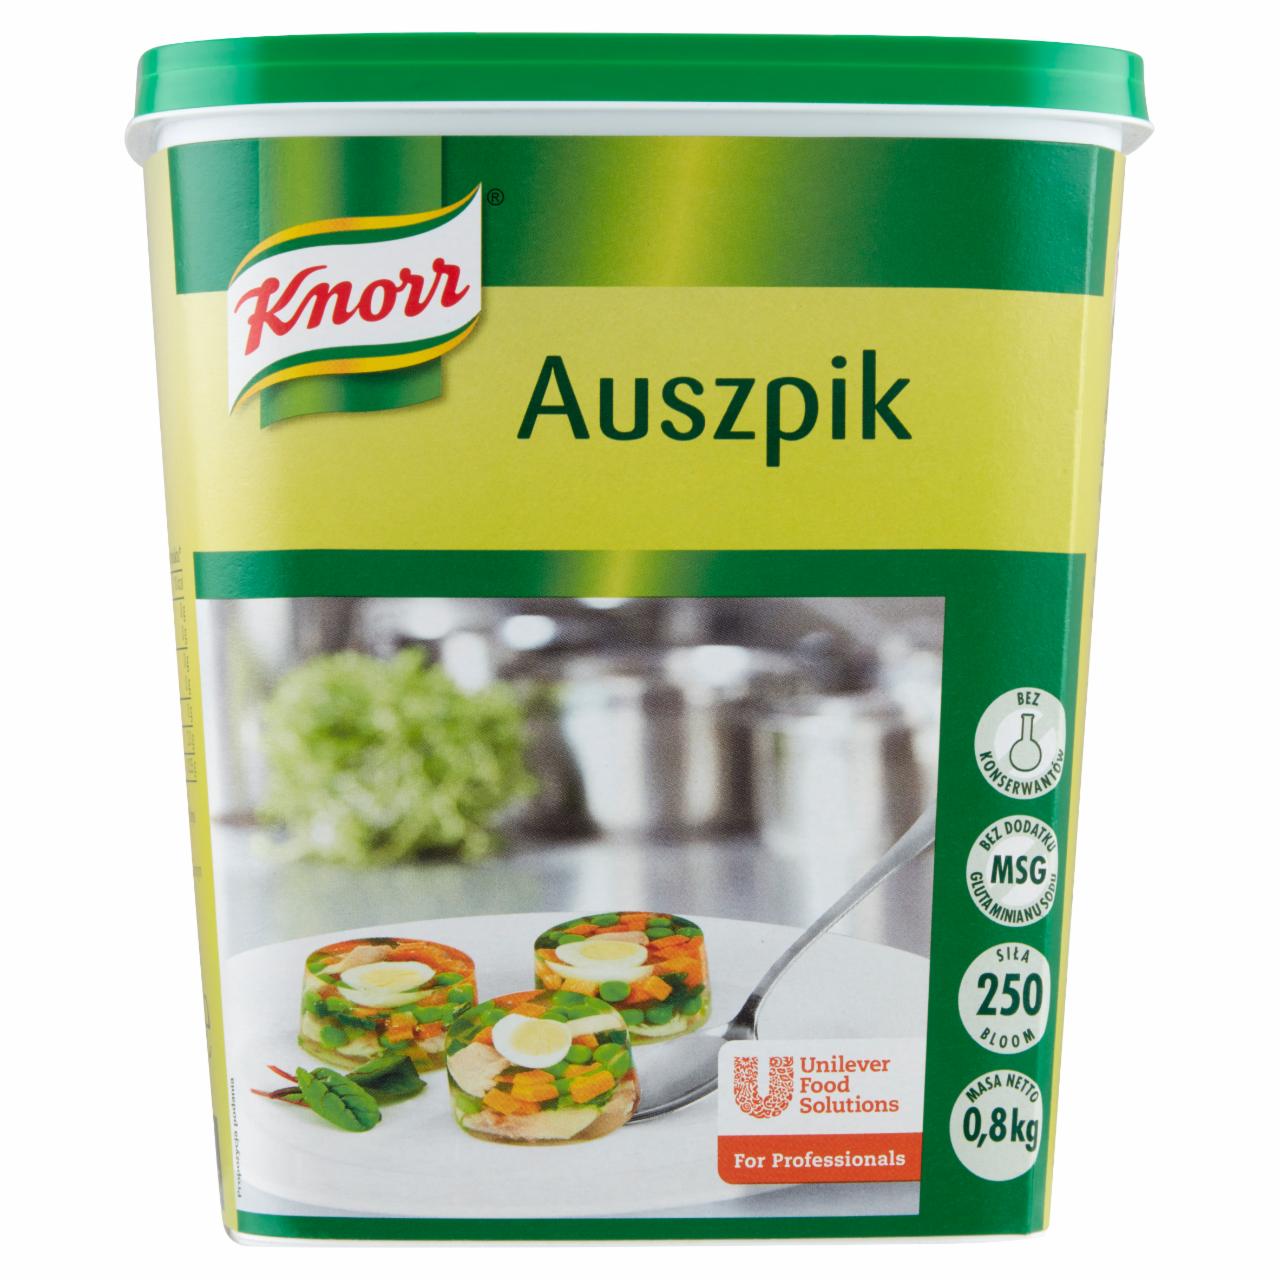 Zdjęcia - Knorr Auszpik Żelatyna spożywcza wieprzowa 800 g